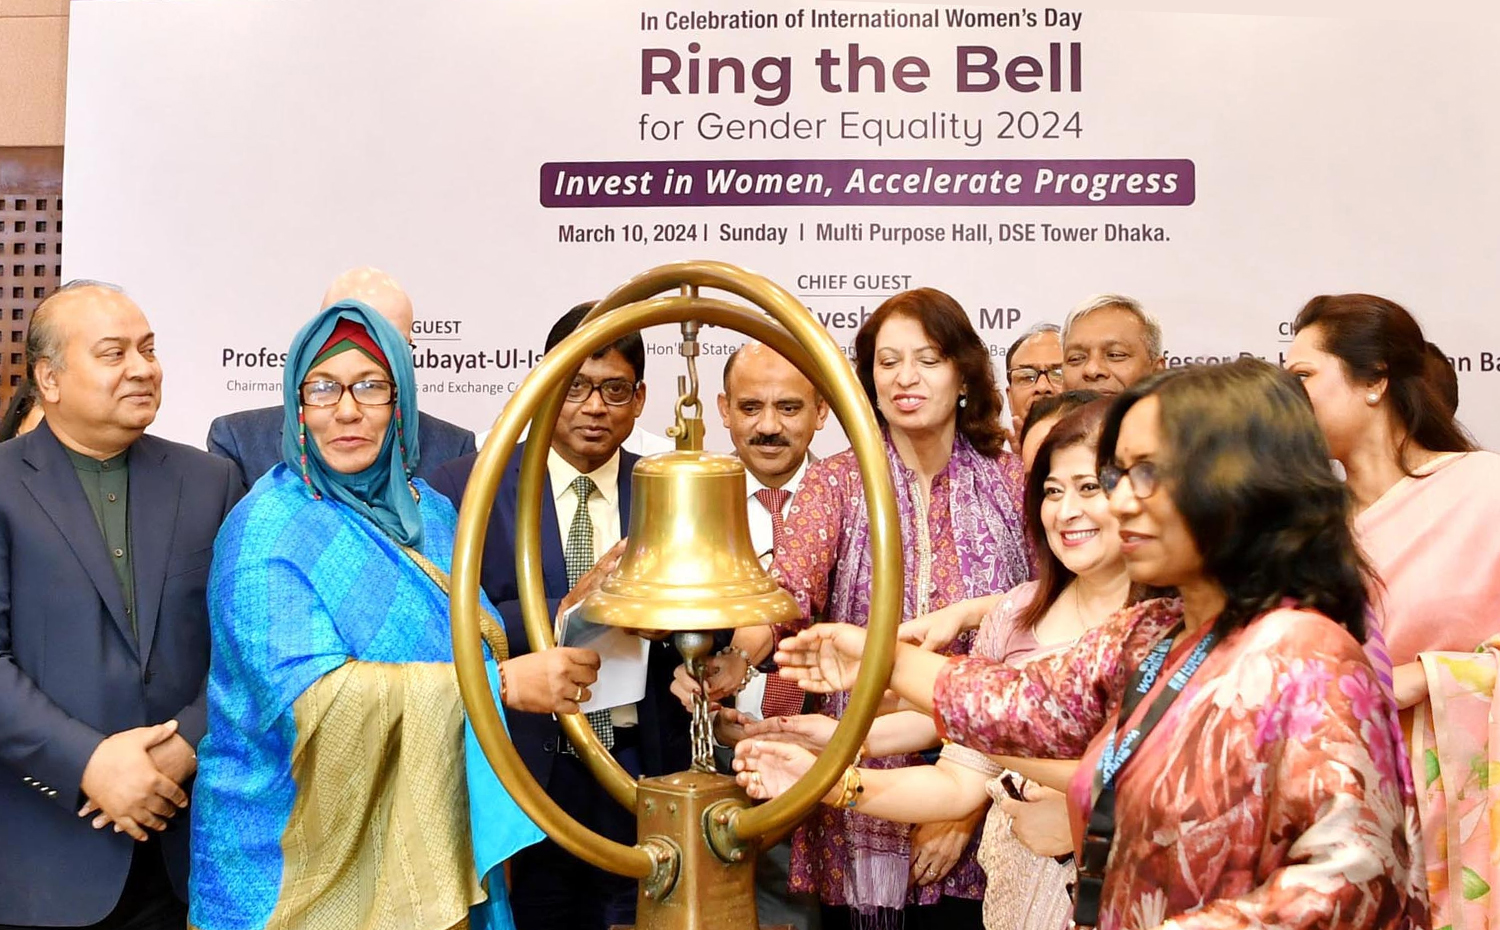 অর্থ প্রতিমন্ত্রী ওয়াসিকা আয়শা খান ঢাকায় স্টক এক্সচেঞ্জ টাওয়ারে আন্তর্জাতিক নারী দিবস উপলক্ষ্যে 'Ring the Bell for Gender Equality 2024: Invest in Women, Accelerate Progress' শীর্ষক অনুষ্ঠান উদ্বোধন করেন